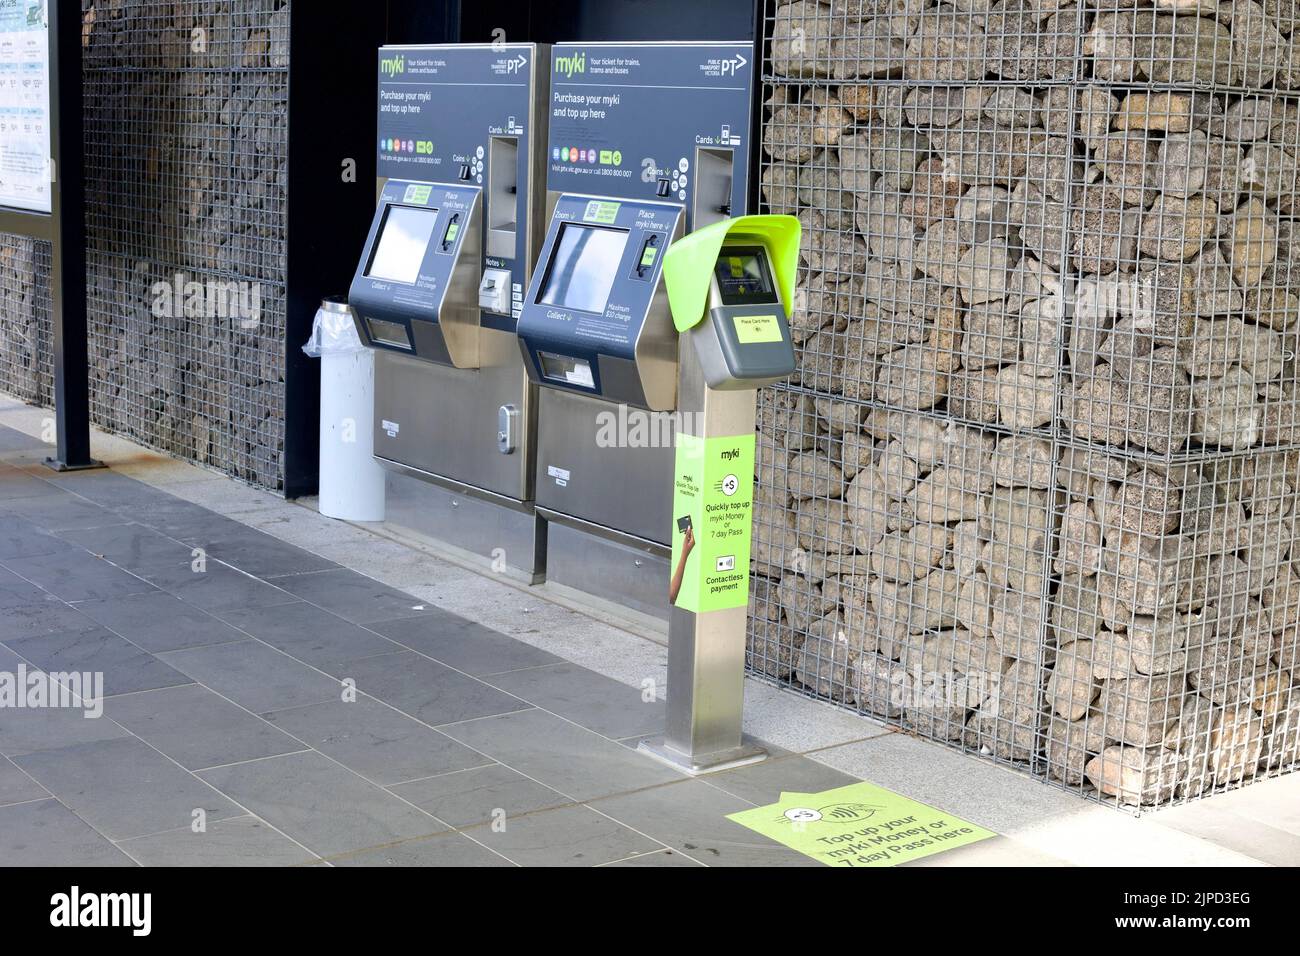 Un système de billetterie en libre-service myki australien près d'un mur en pierre Banque D'Images